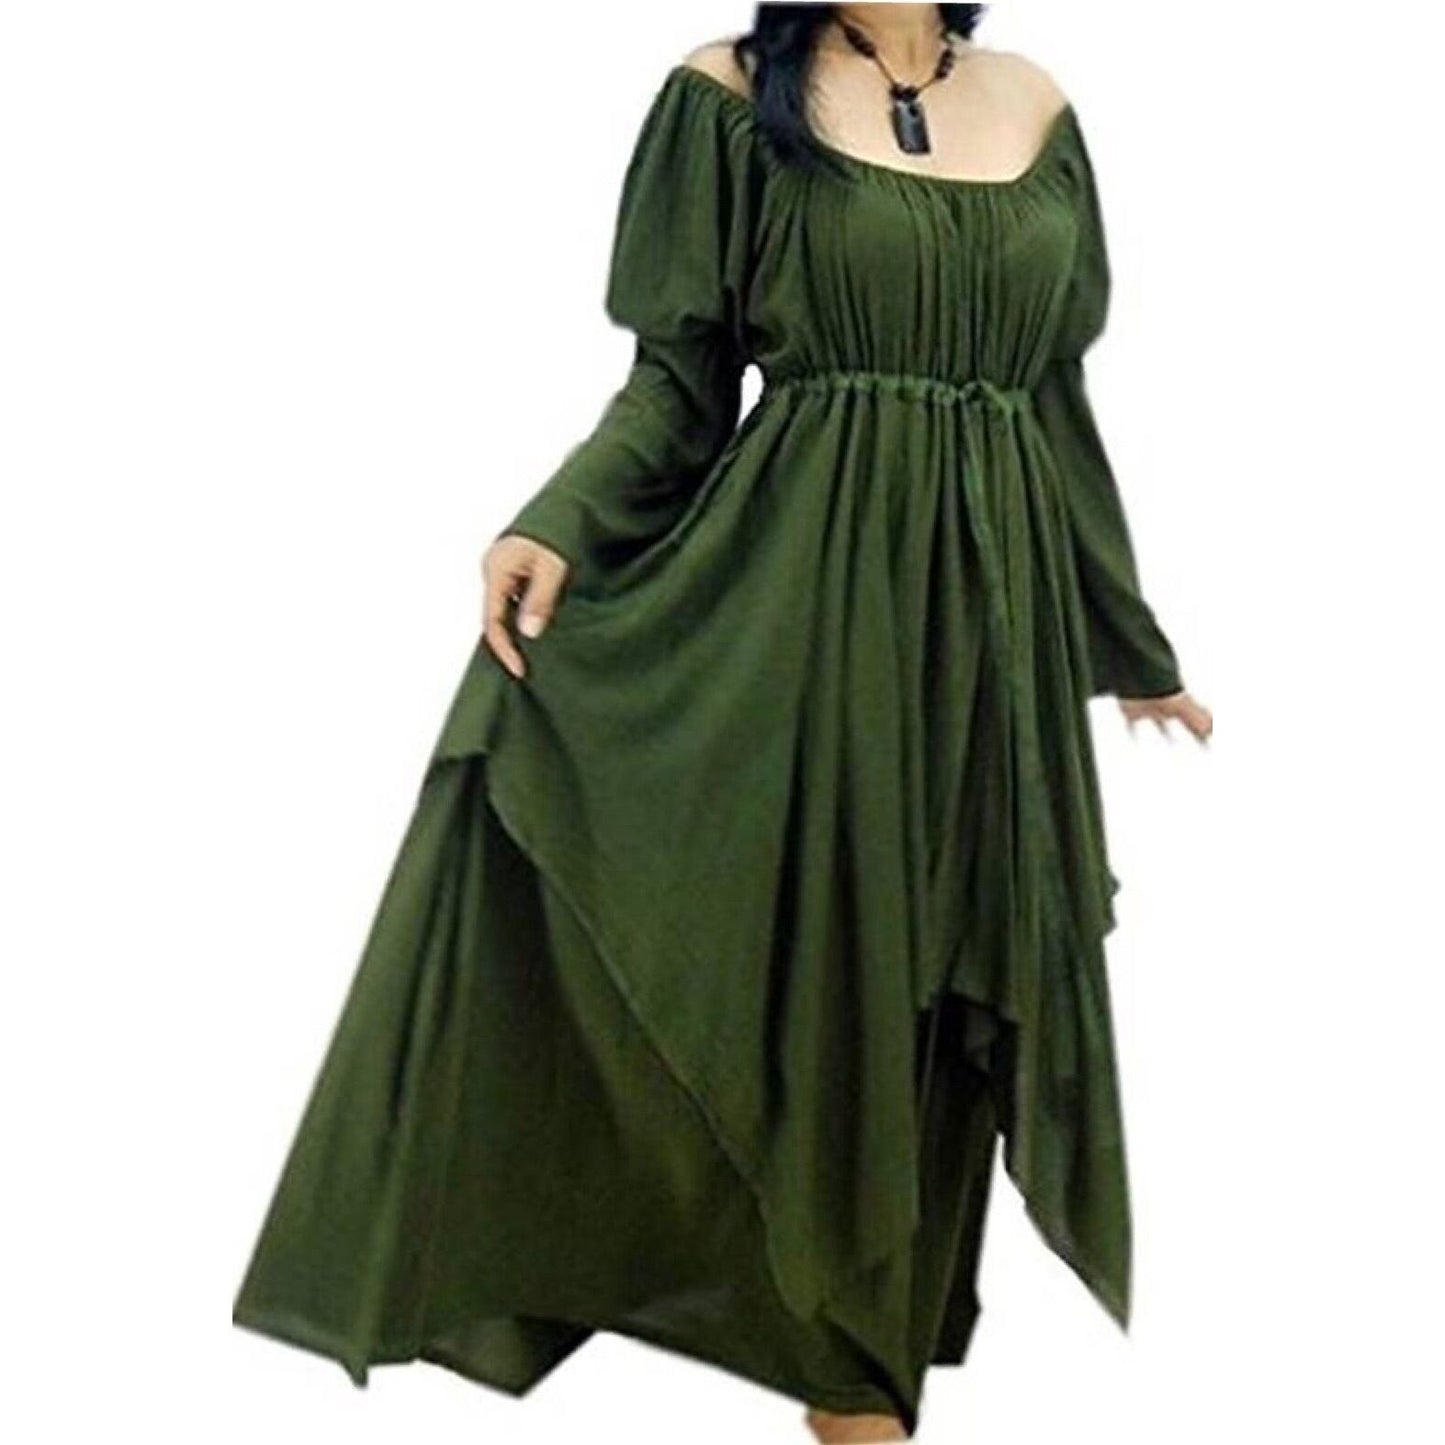 Maren Renaissance Layered Empire Waist Wedding Maxi Dress - The Bohemian Closet